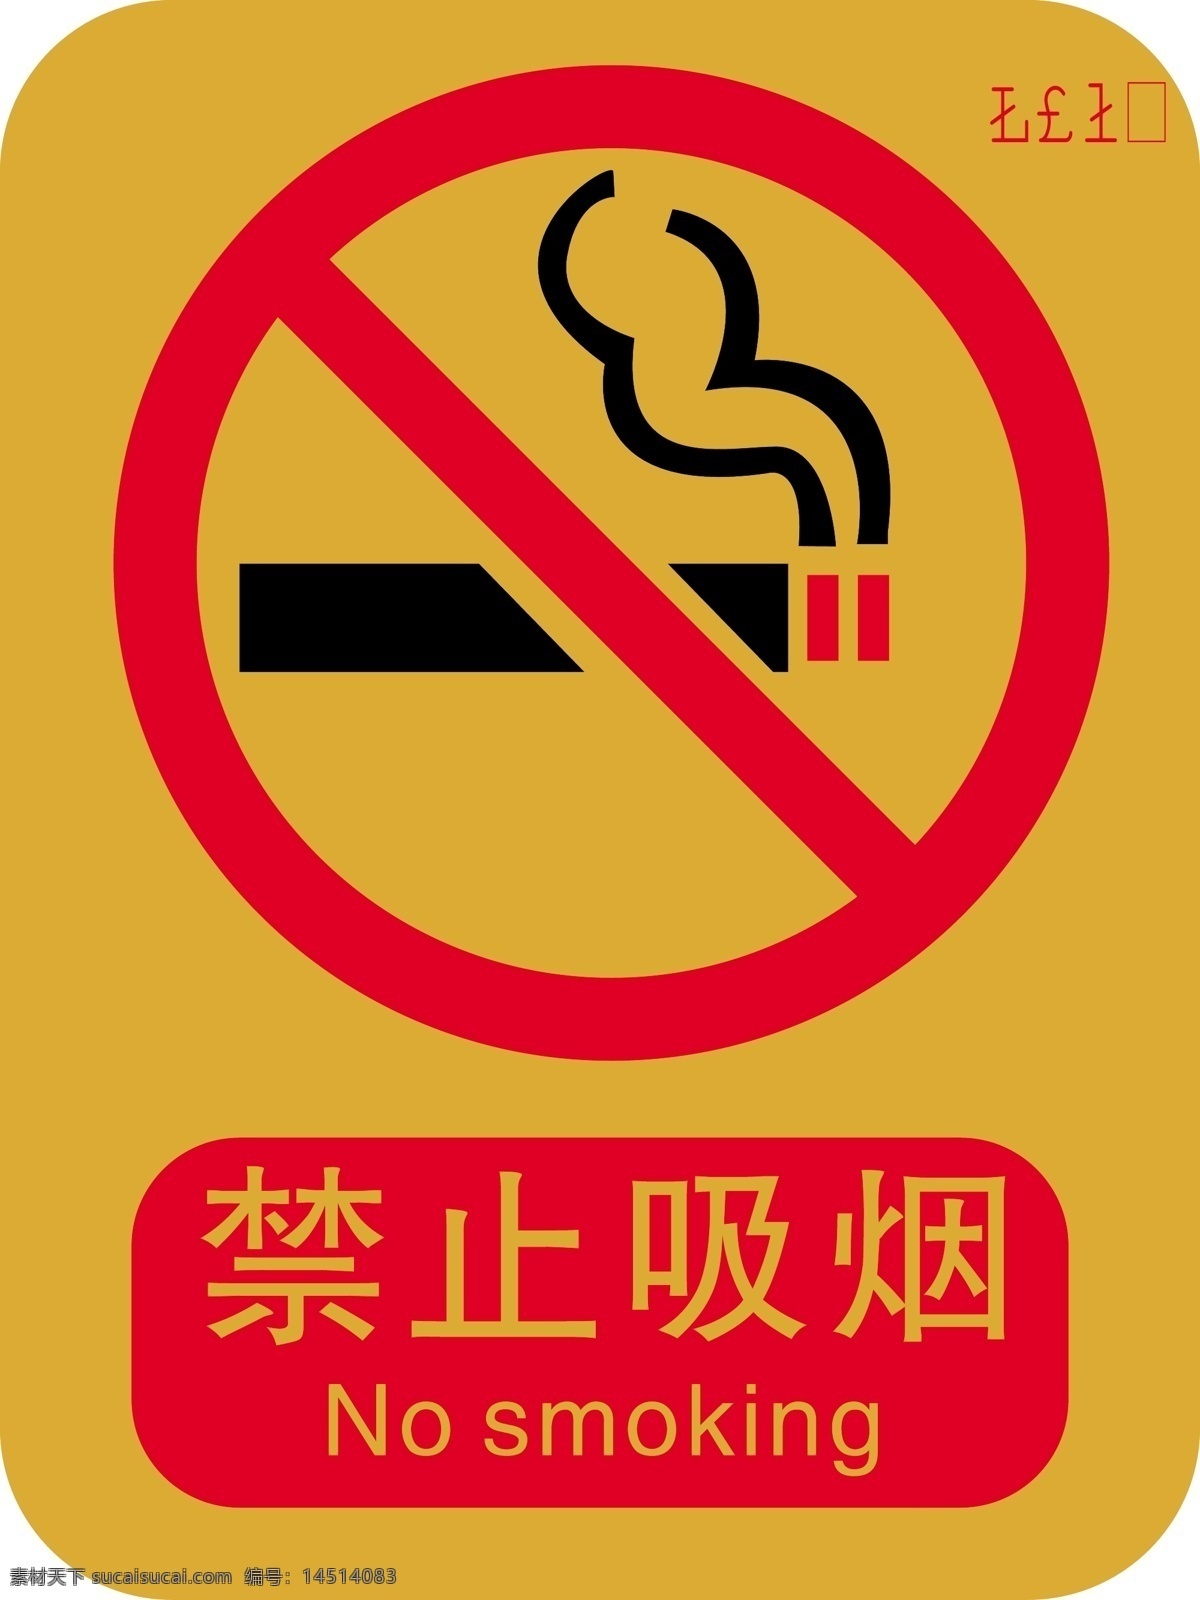 禁止吸烟标志 禁止吸烟标识 禁烟 禁烟标识 禁烟标示 安全标识 标志图标 公共标识标志